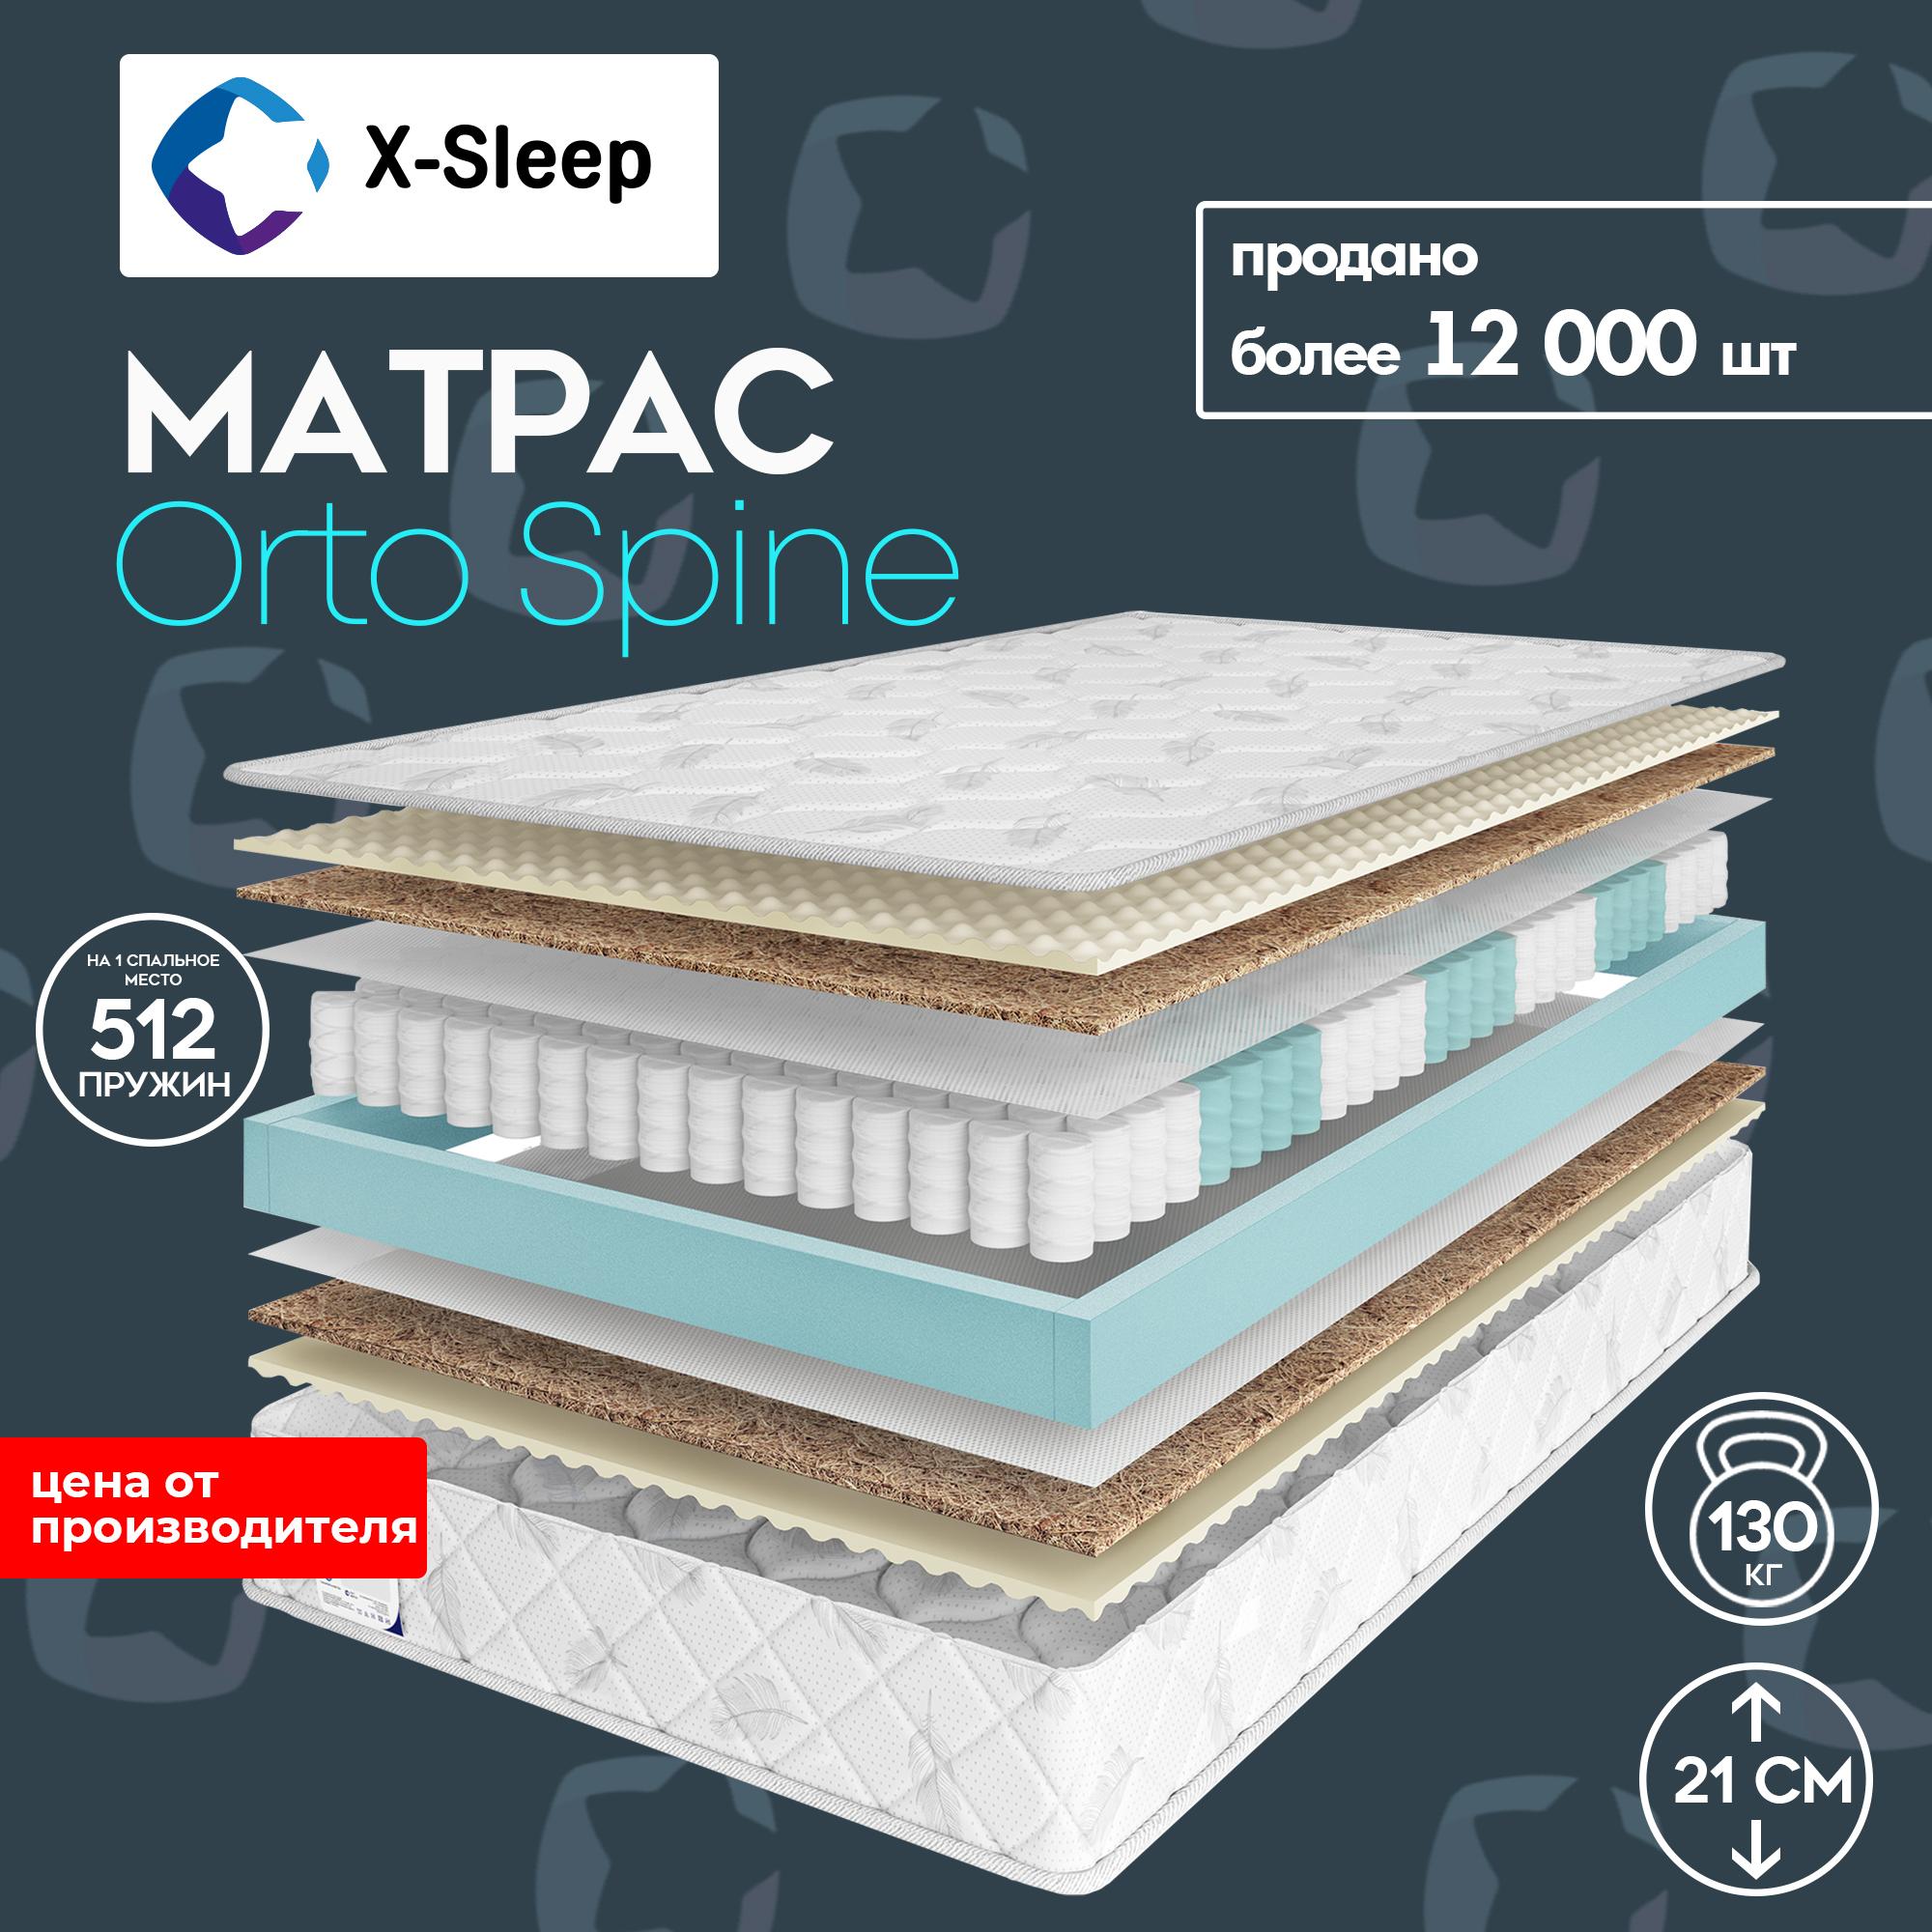 X-Sleep Матрас Orto Spine, Независимые пружины, 140х200 см